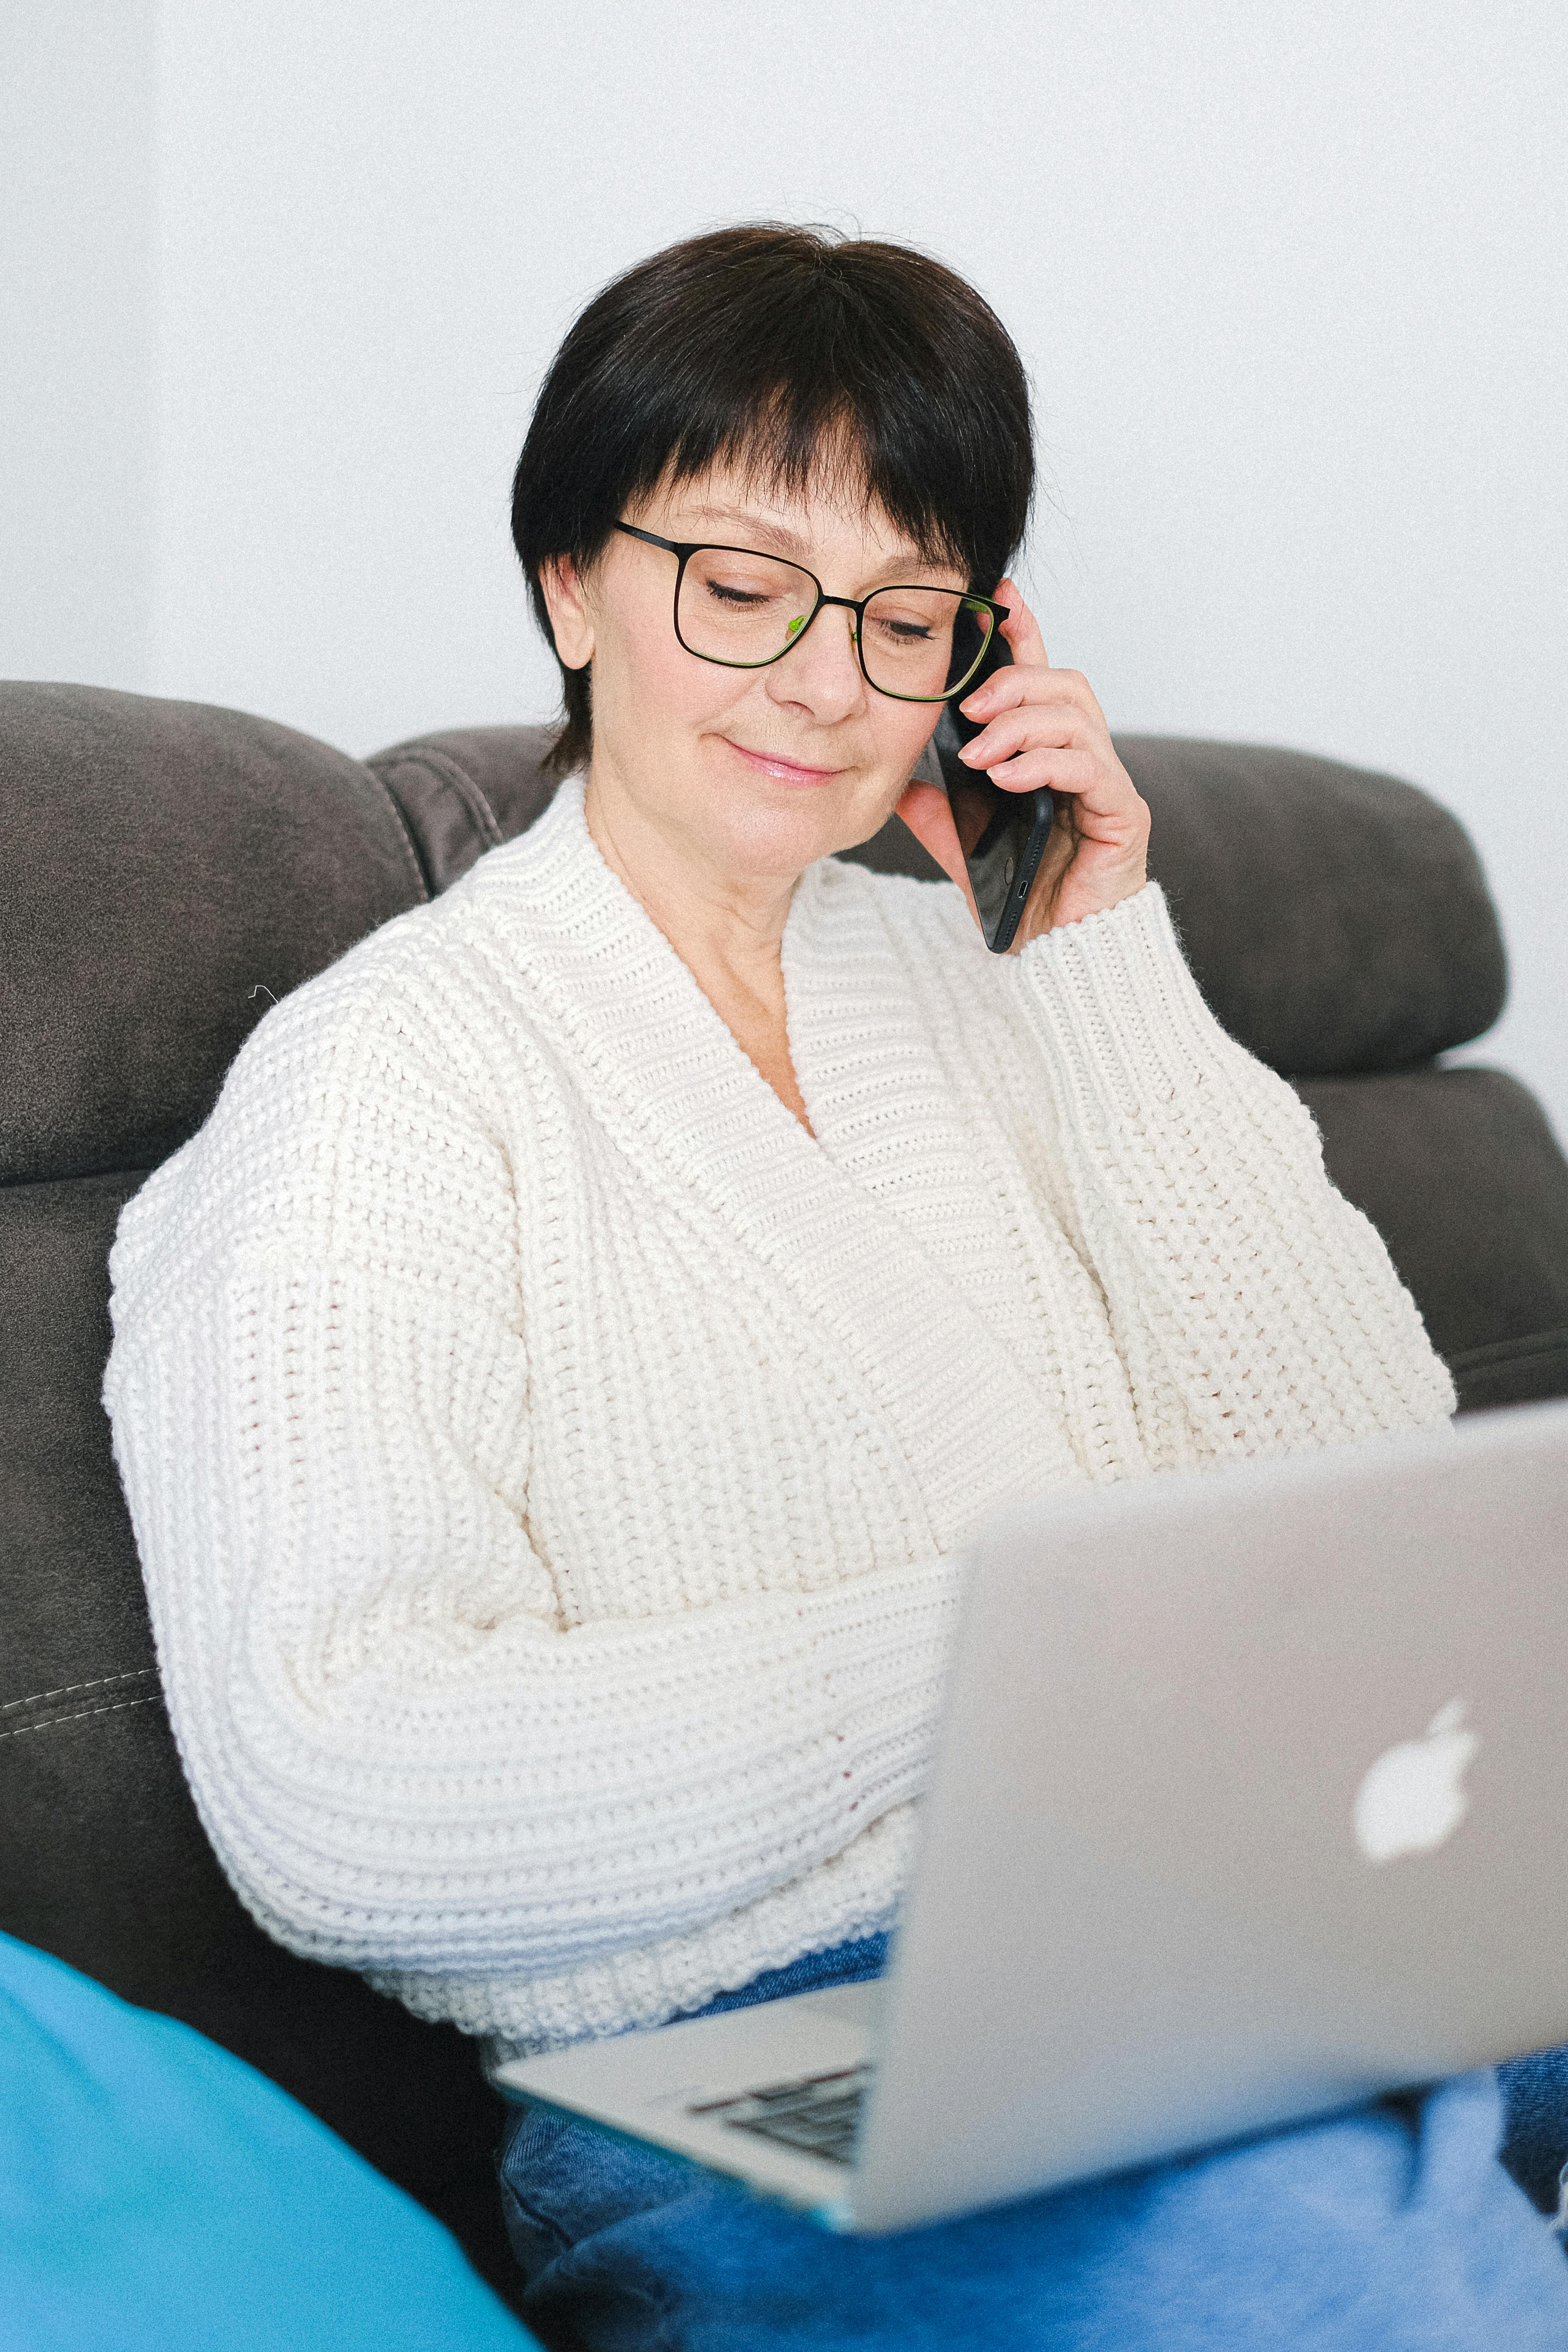 Una mujer sonriendo y hablando por teléfono | Fuente: Pexels